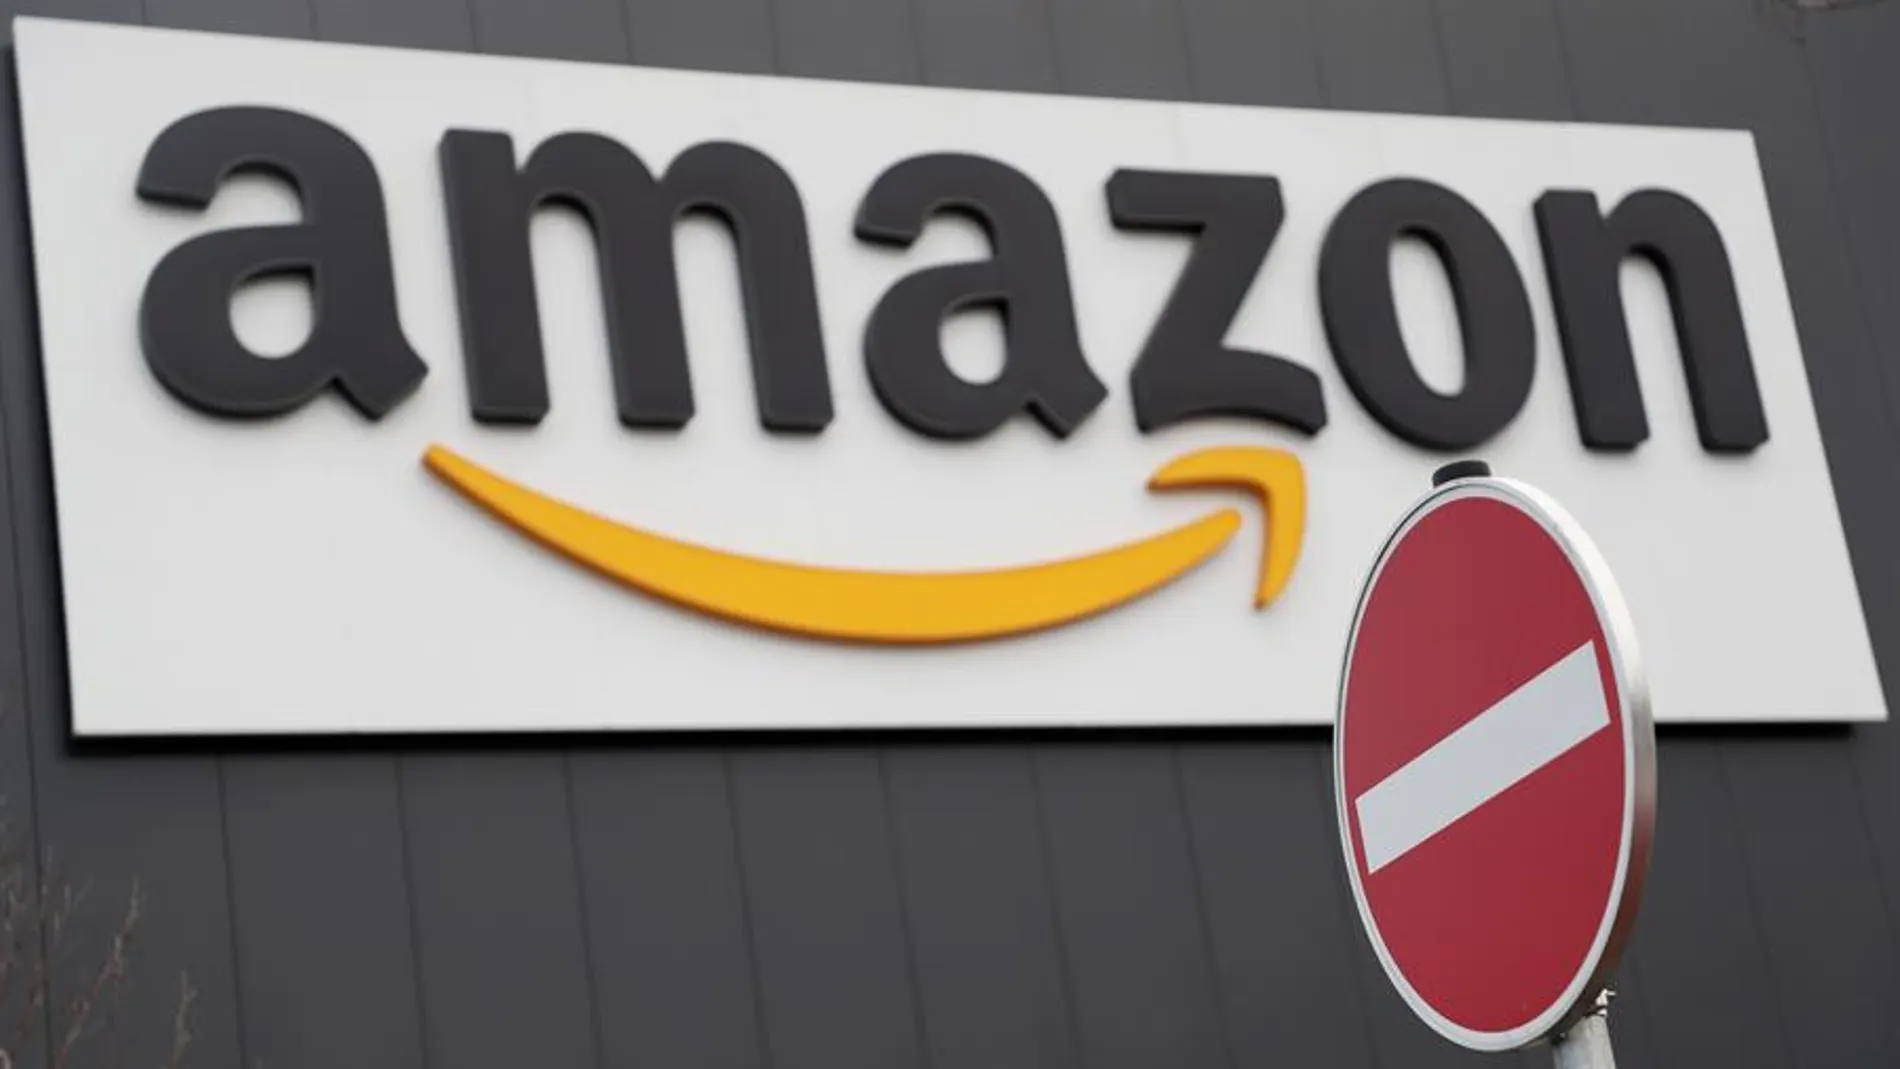 Amazon tendrá que imponer una tarifa de envío de tres euros en Francia